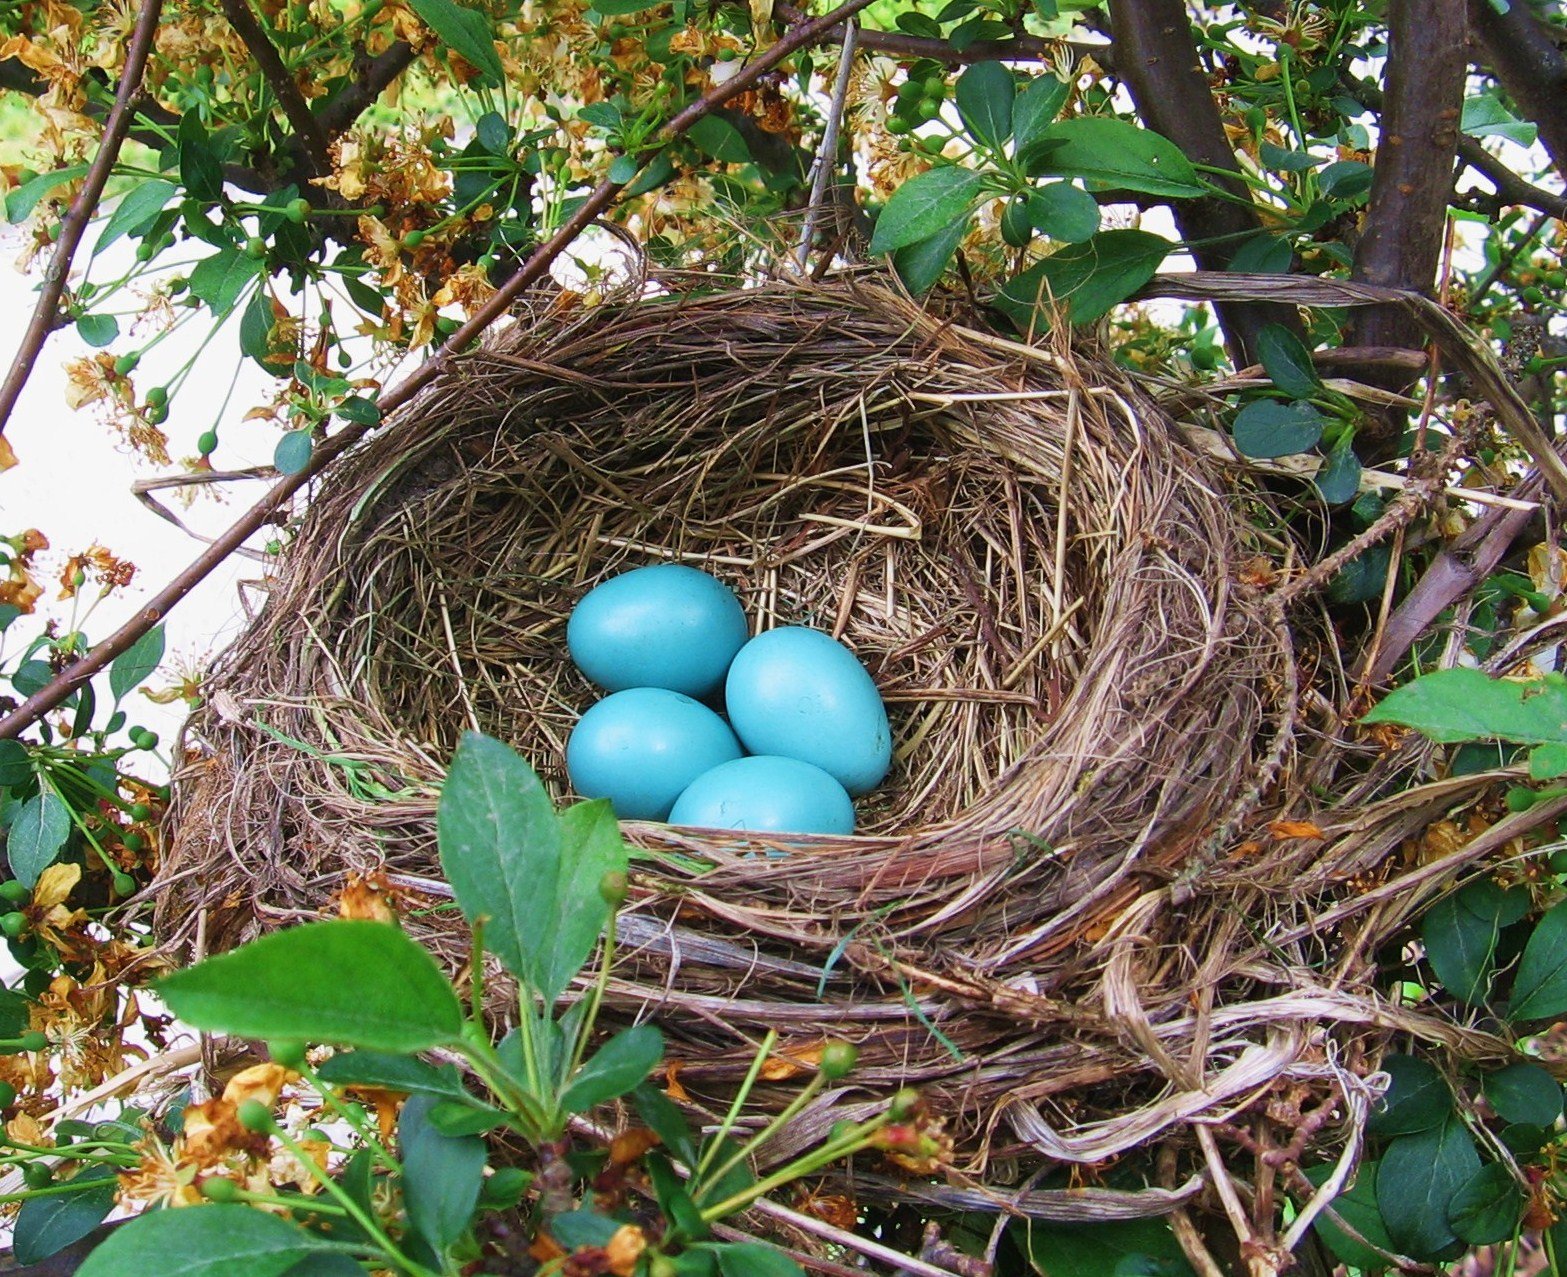 Their nests. Гнездо горихвостки. Горихвостка птичка в гнезде. Горихвостка гнездо и яйца. Гнездо зарянки.